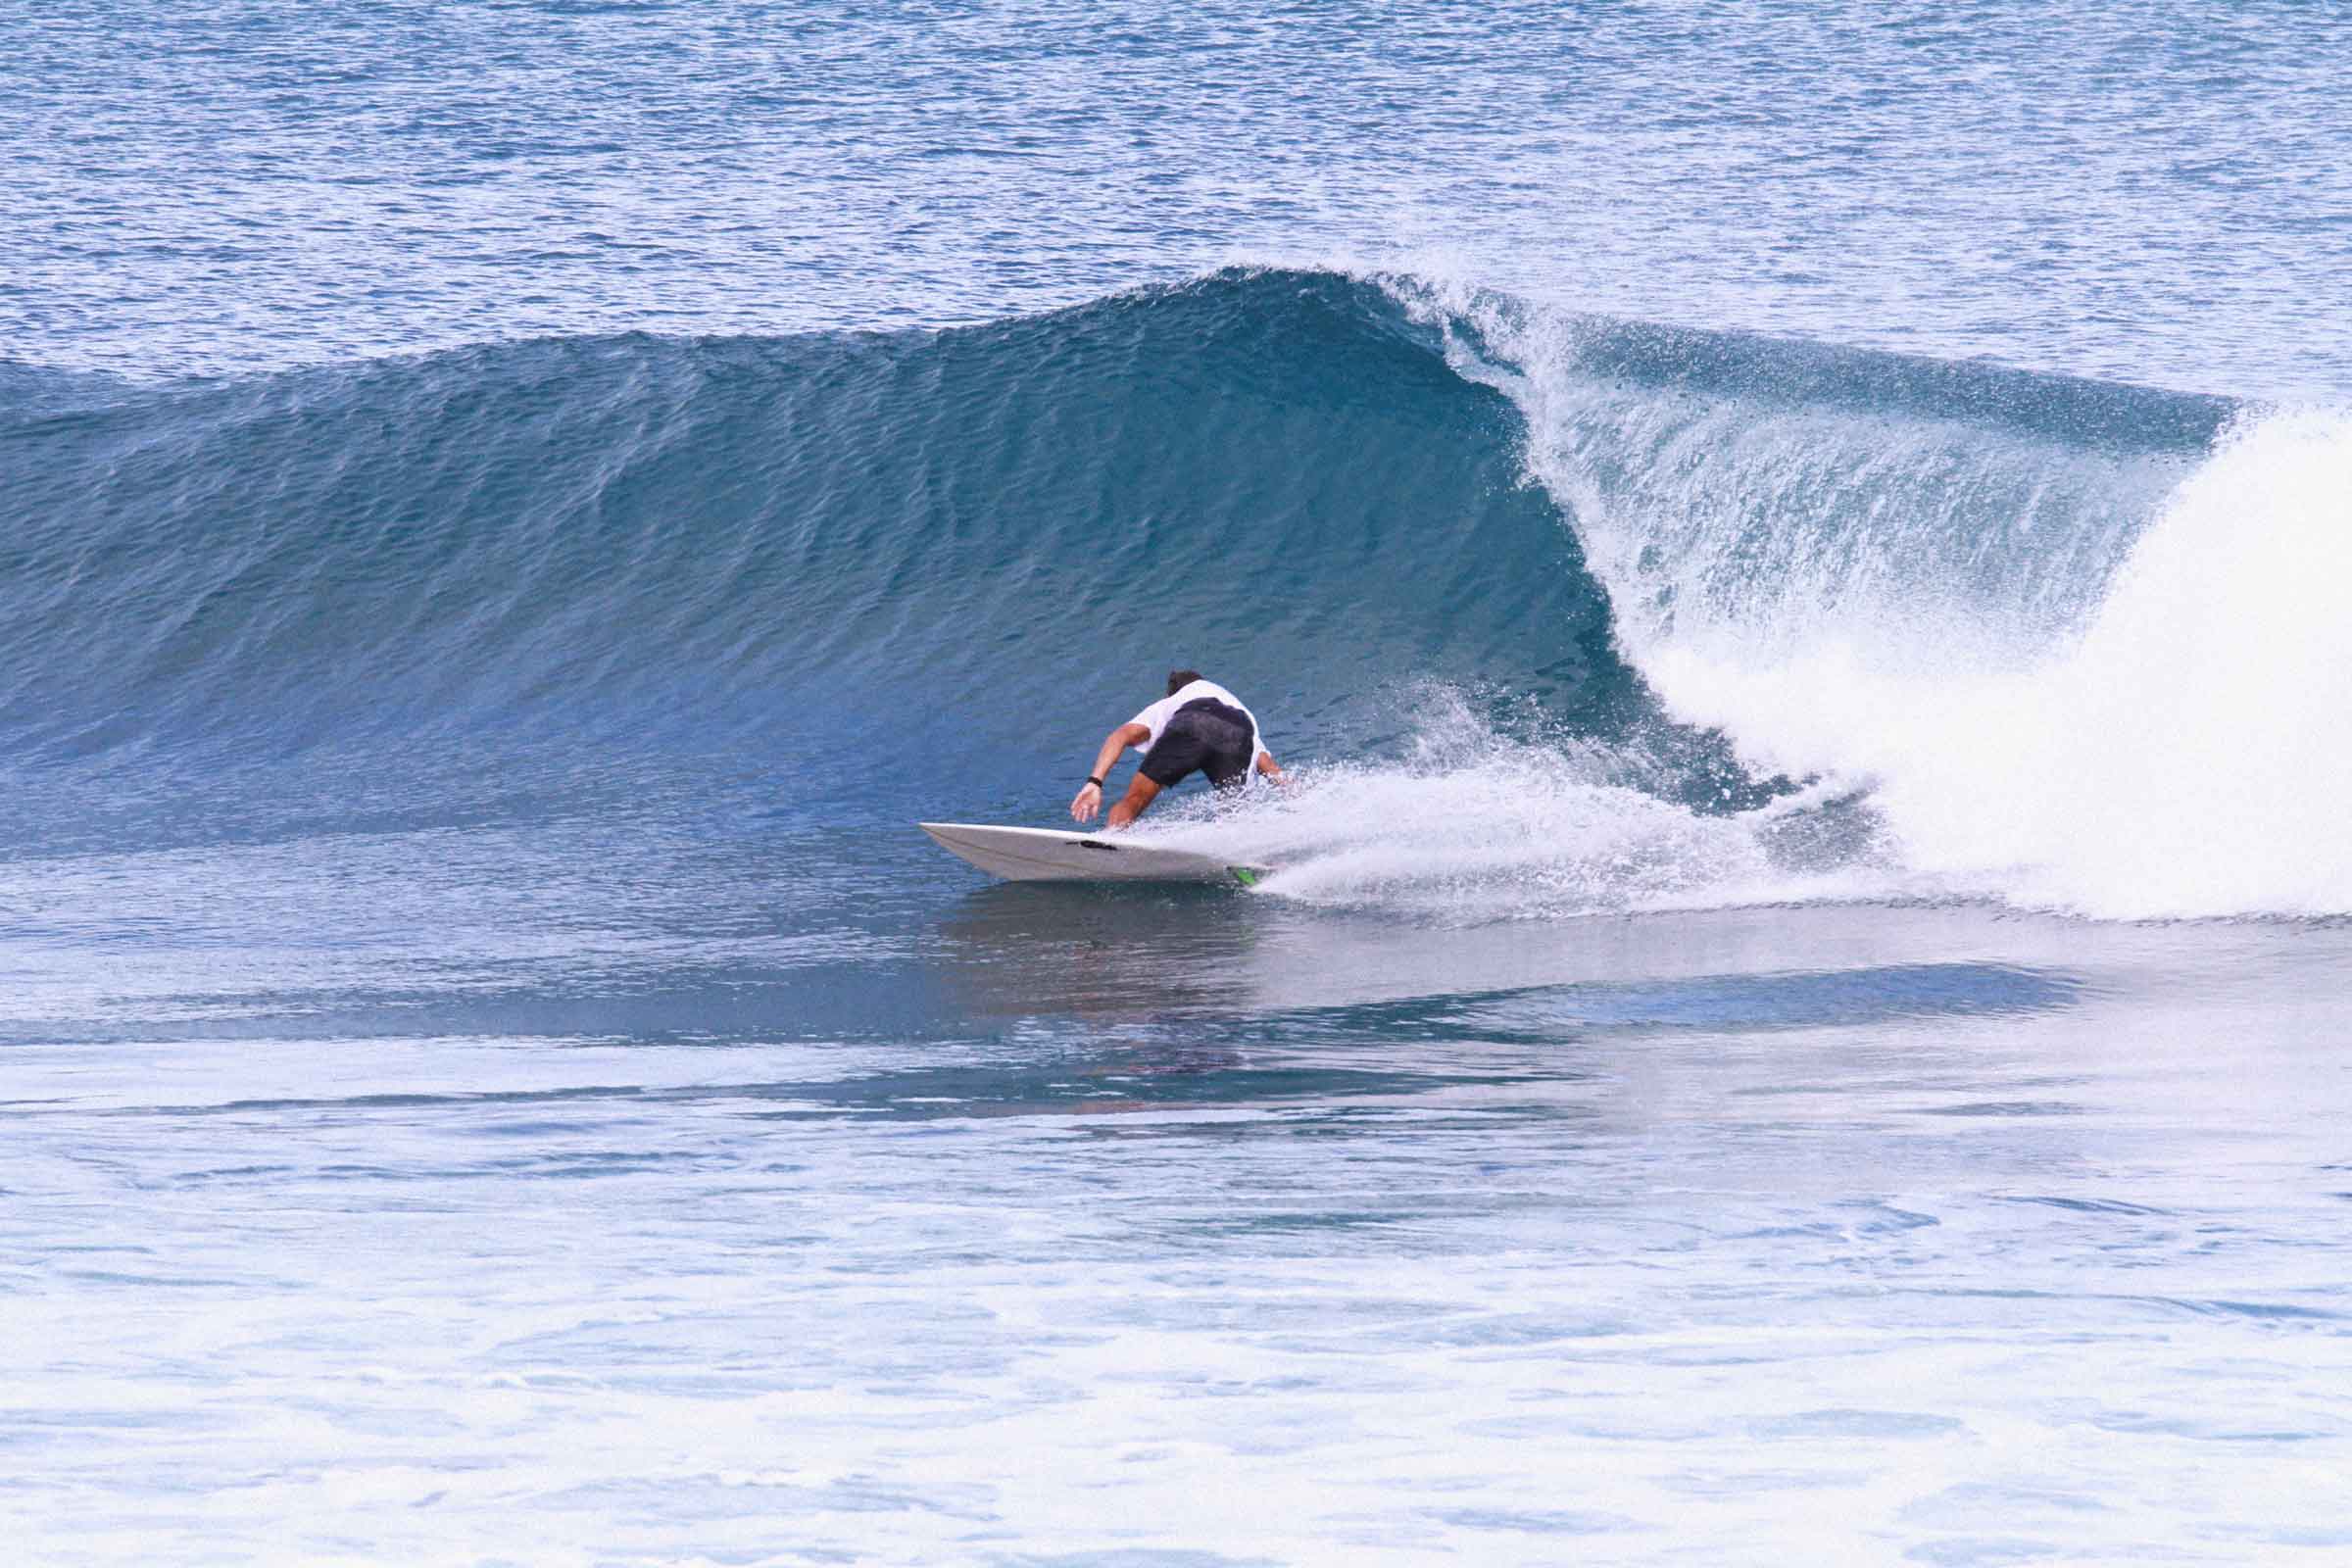 surfer carving on wave